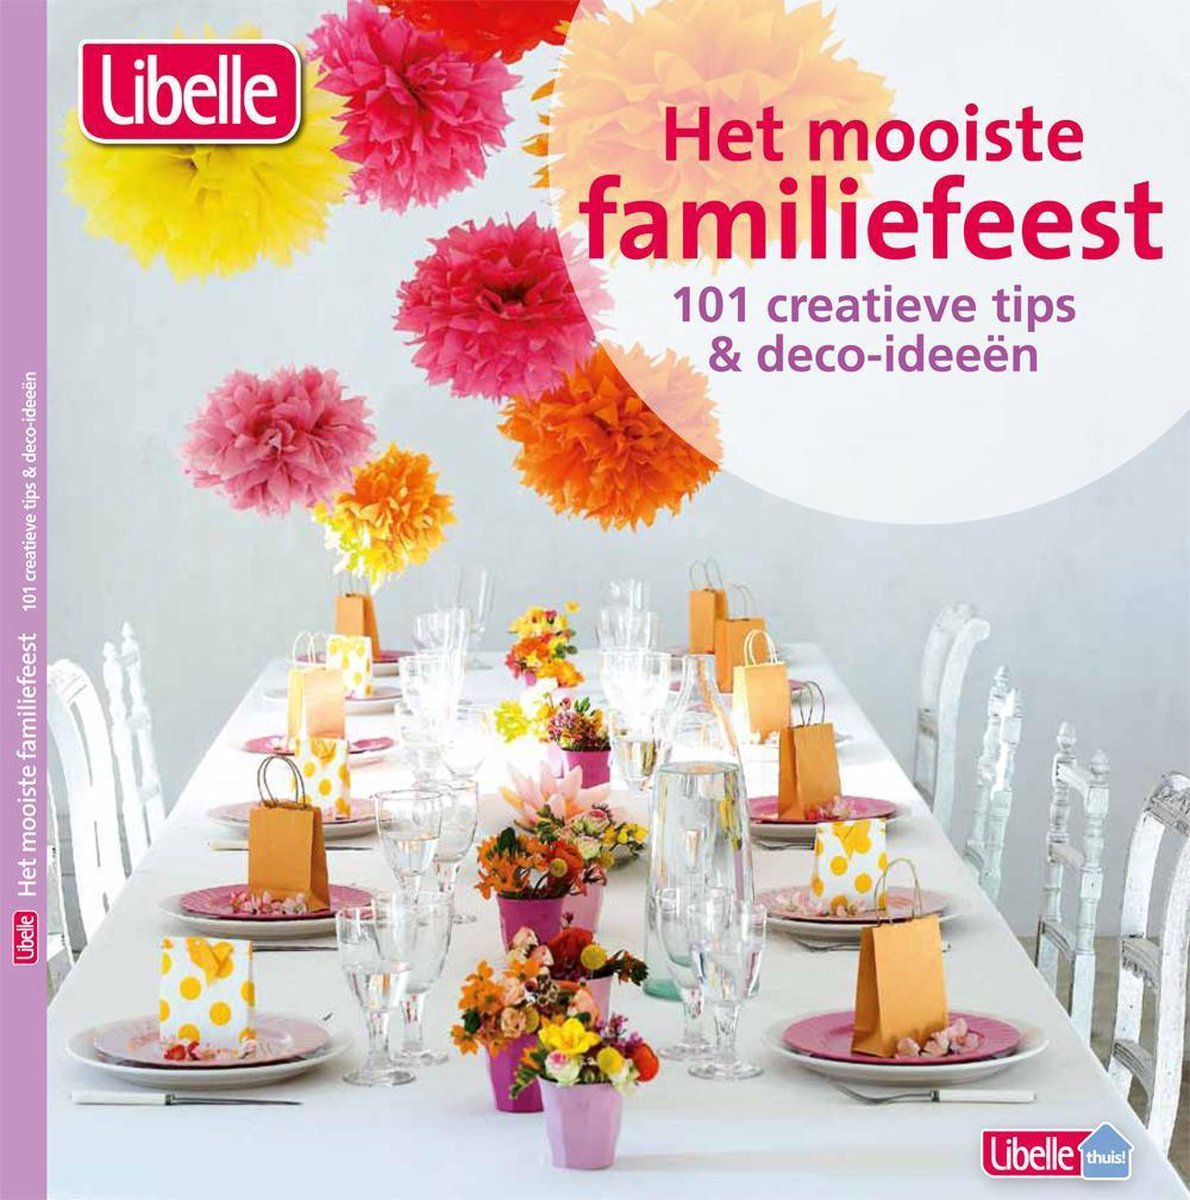 Het mooiste familiefeest - Libelle - 101 decoratie en Deco tips